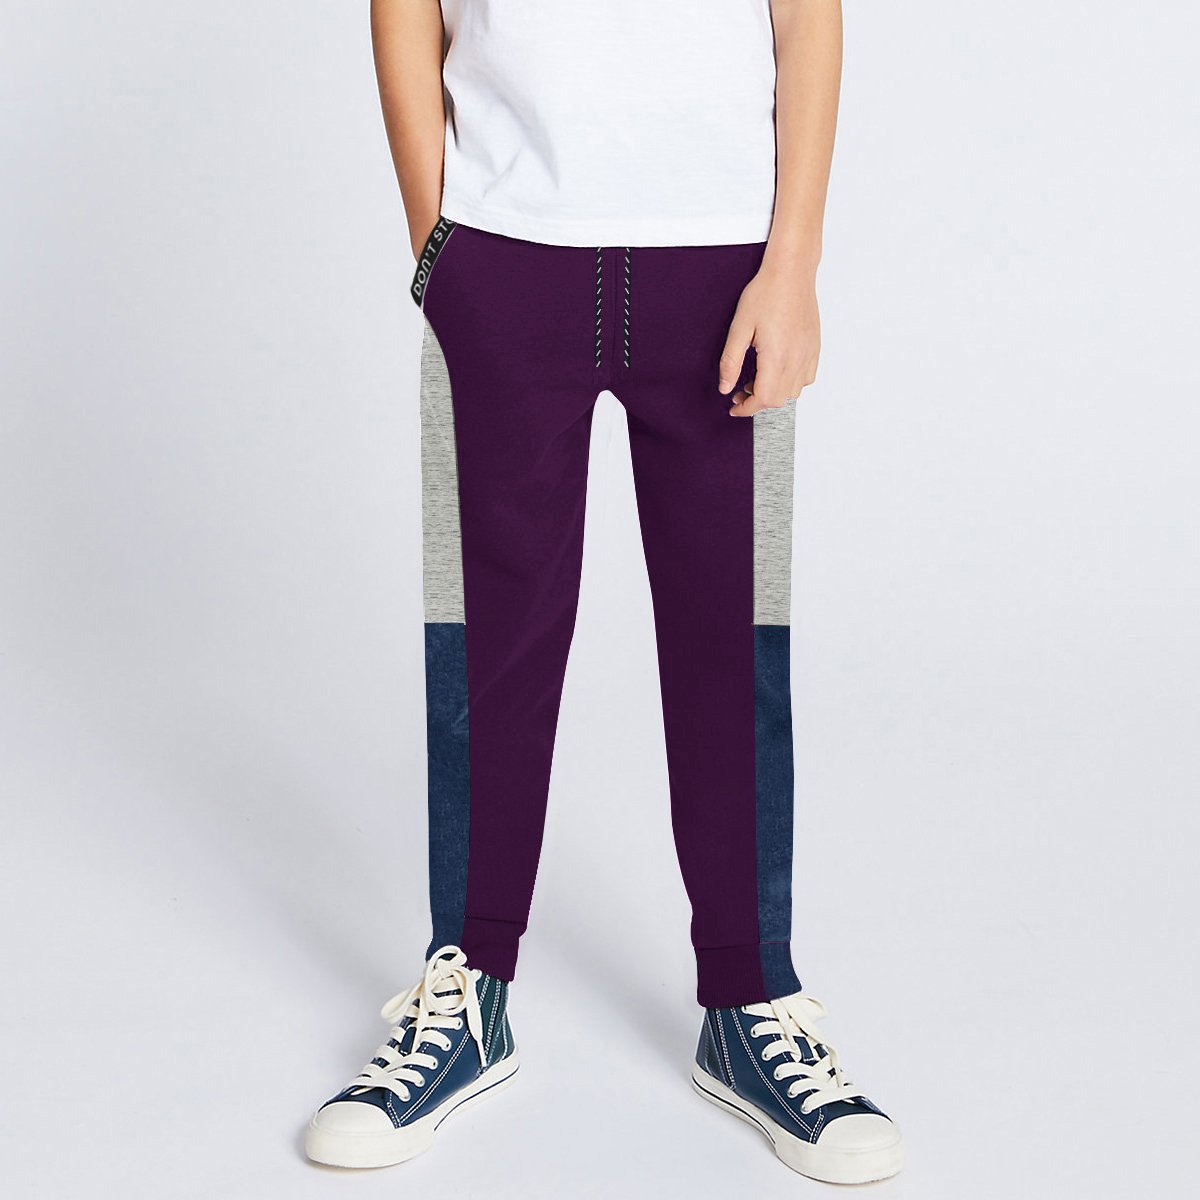 Next Slim Fit Jogger Trouser For Kids-Purple with Grey Melange & Navy Melange Panels-SP2657